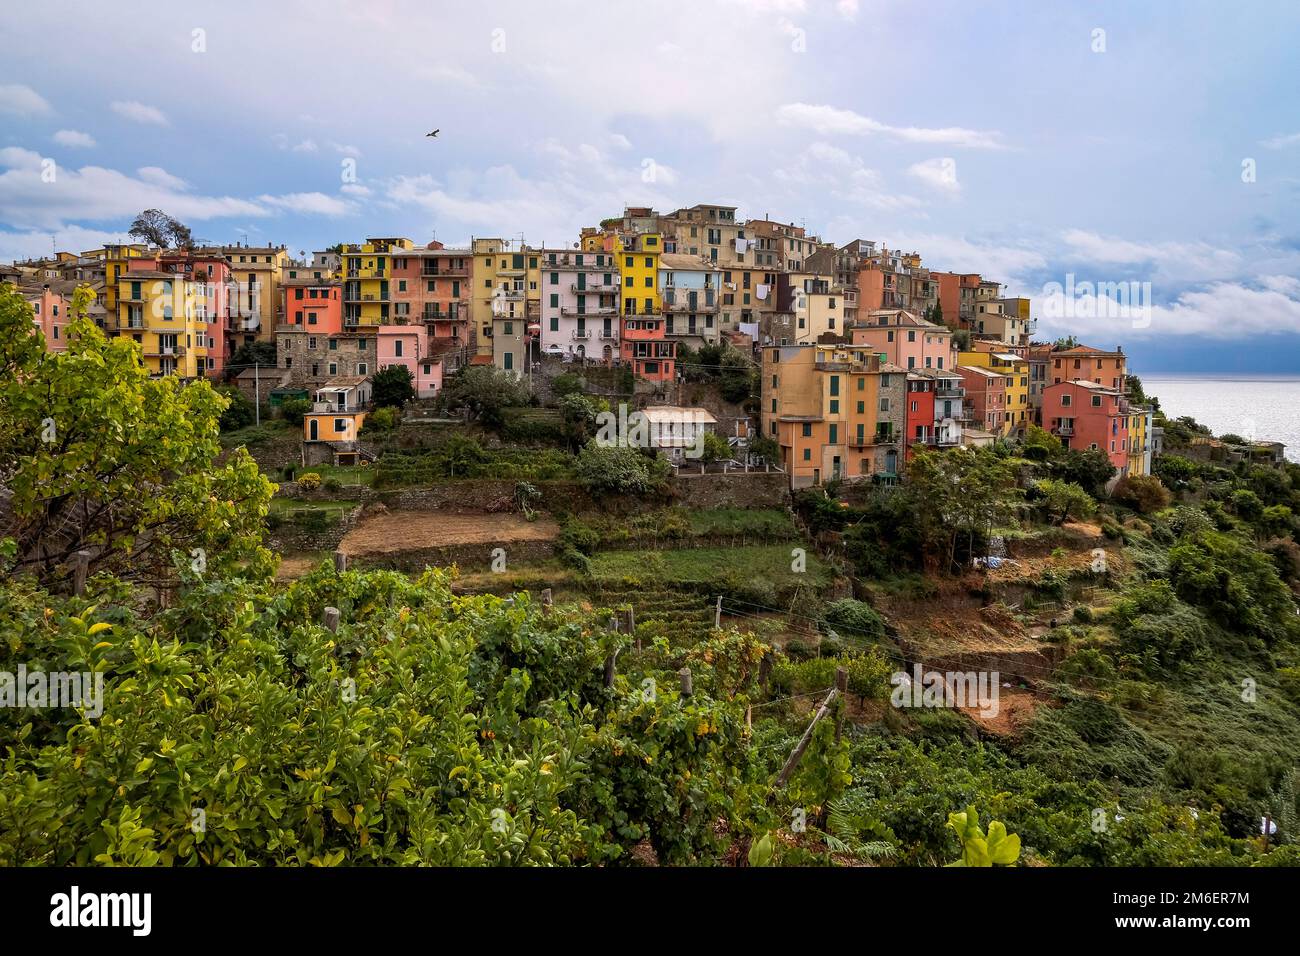 Maisons colorées suspendues dans une falaise avec terrasse champs verts - Corniglia, Cinque Terre, Italie Banque D'Images